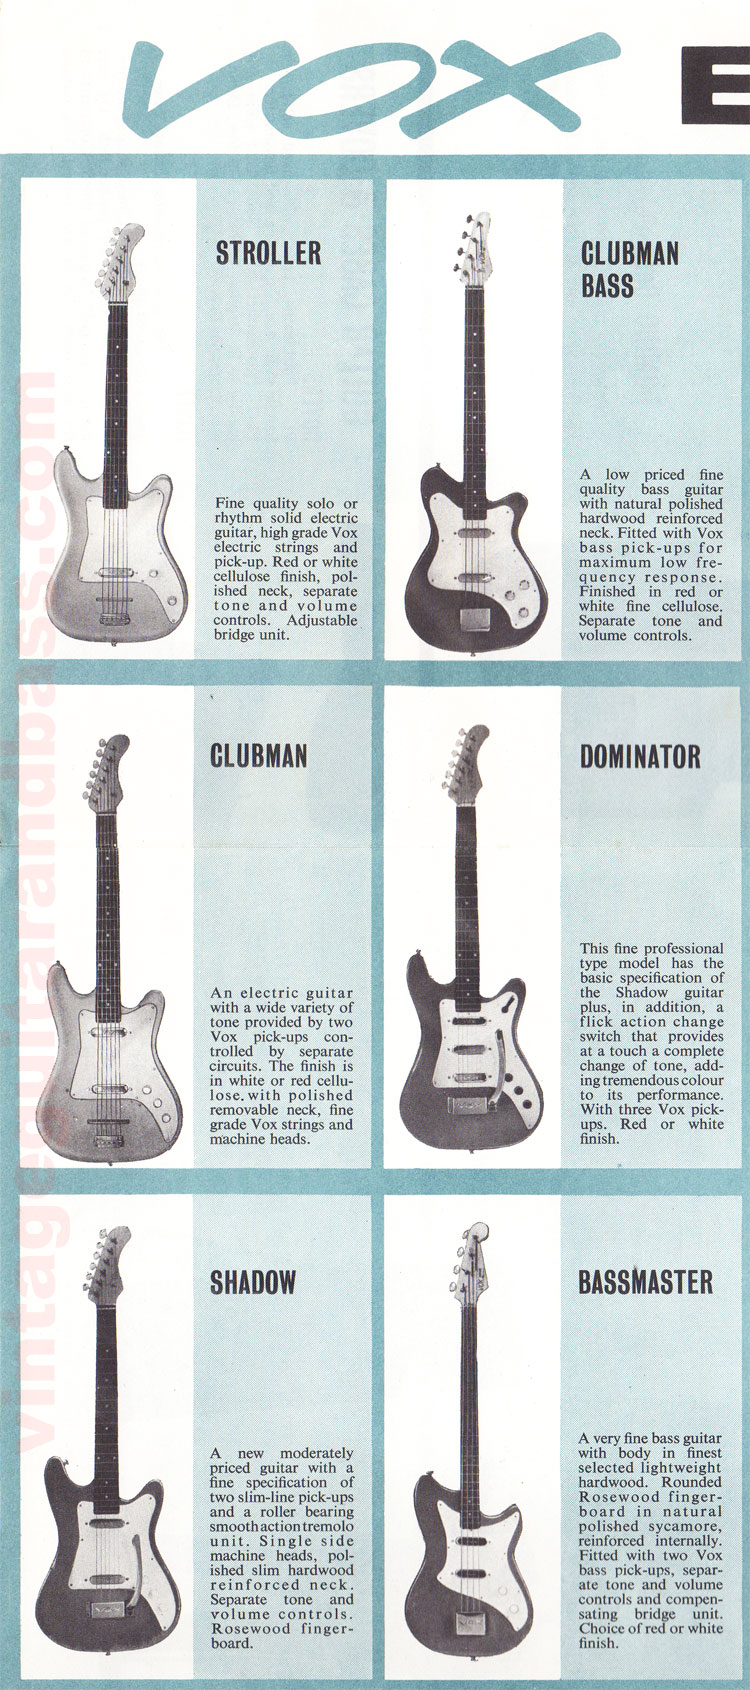 1962 Vox guitar catalog part 2 - details of the Vox Phantom, Phantom bass and Consort